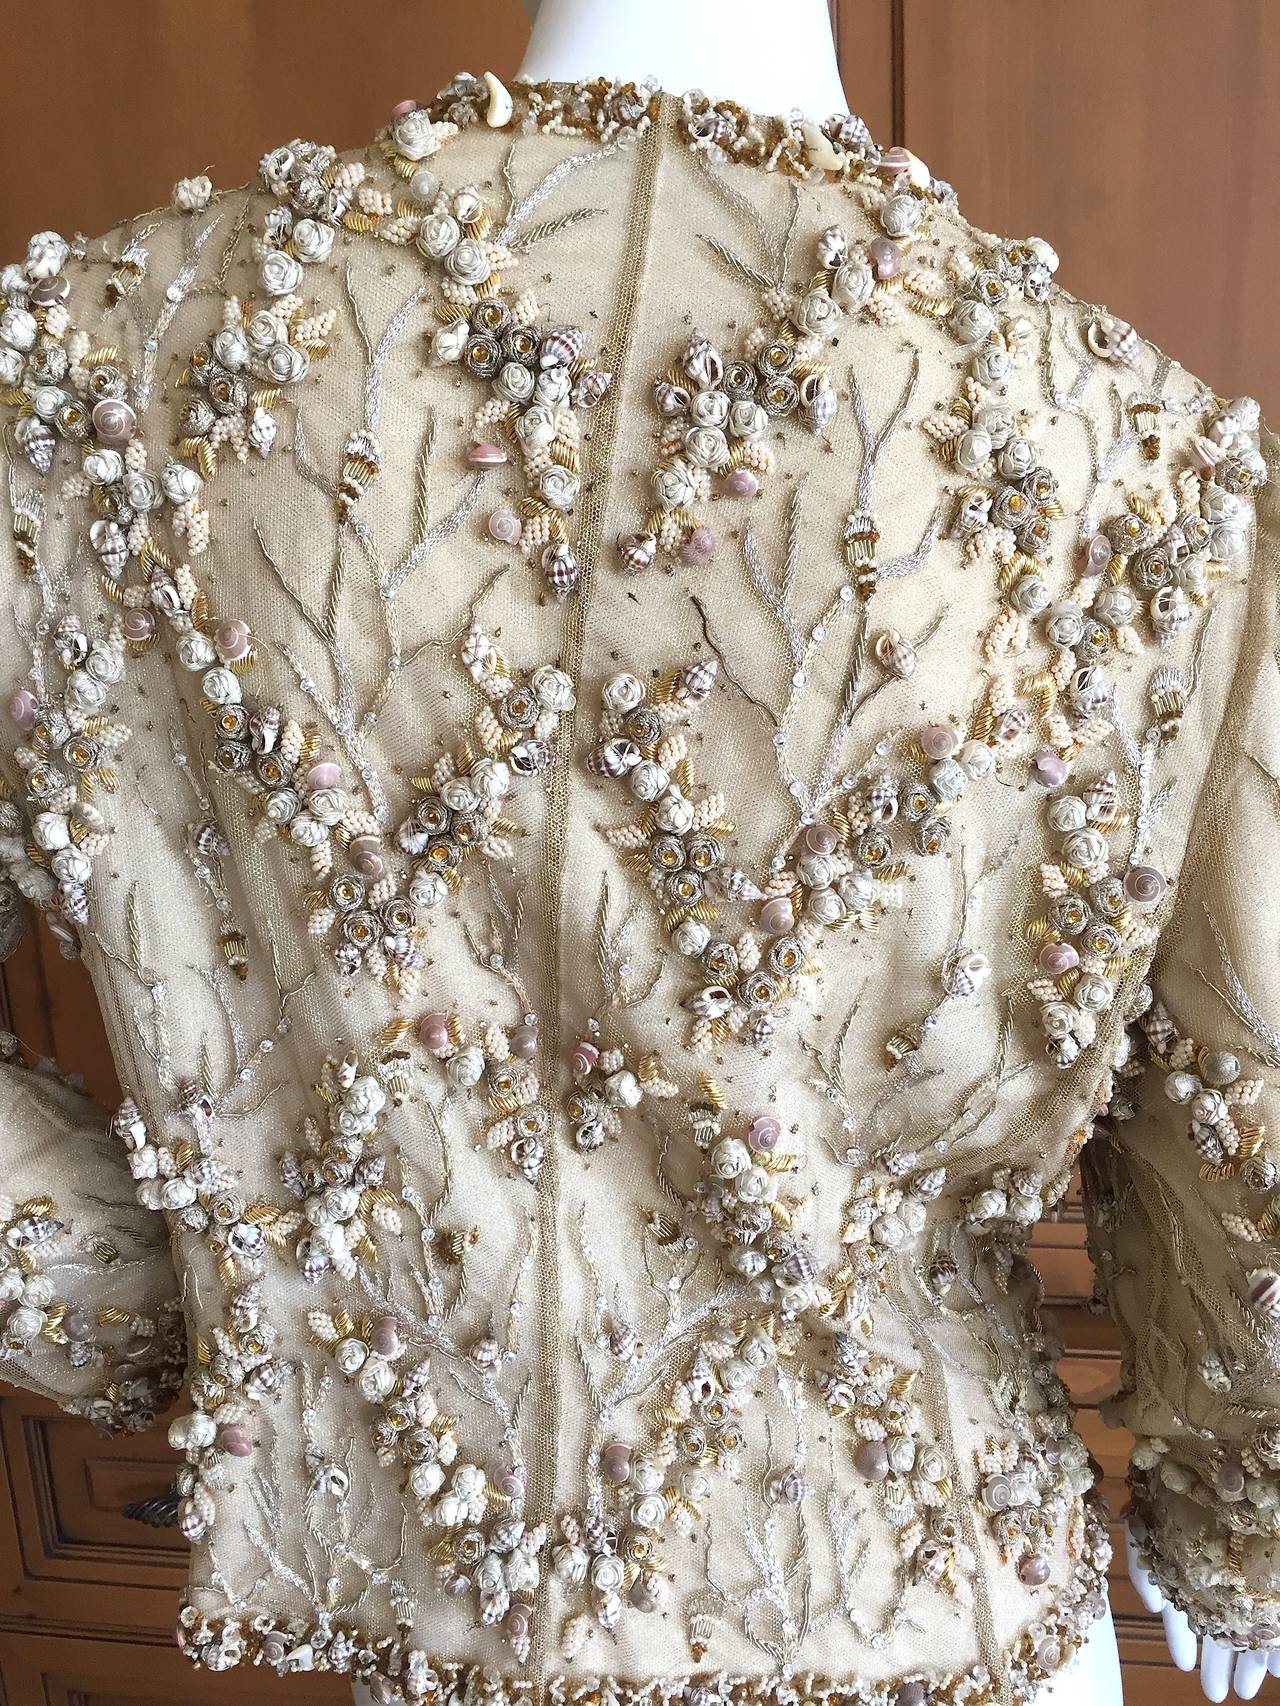 Bill Blass Richly Embellished Vintage Jacket 1